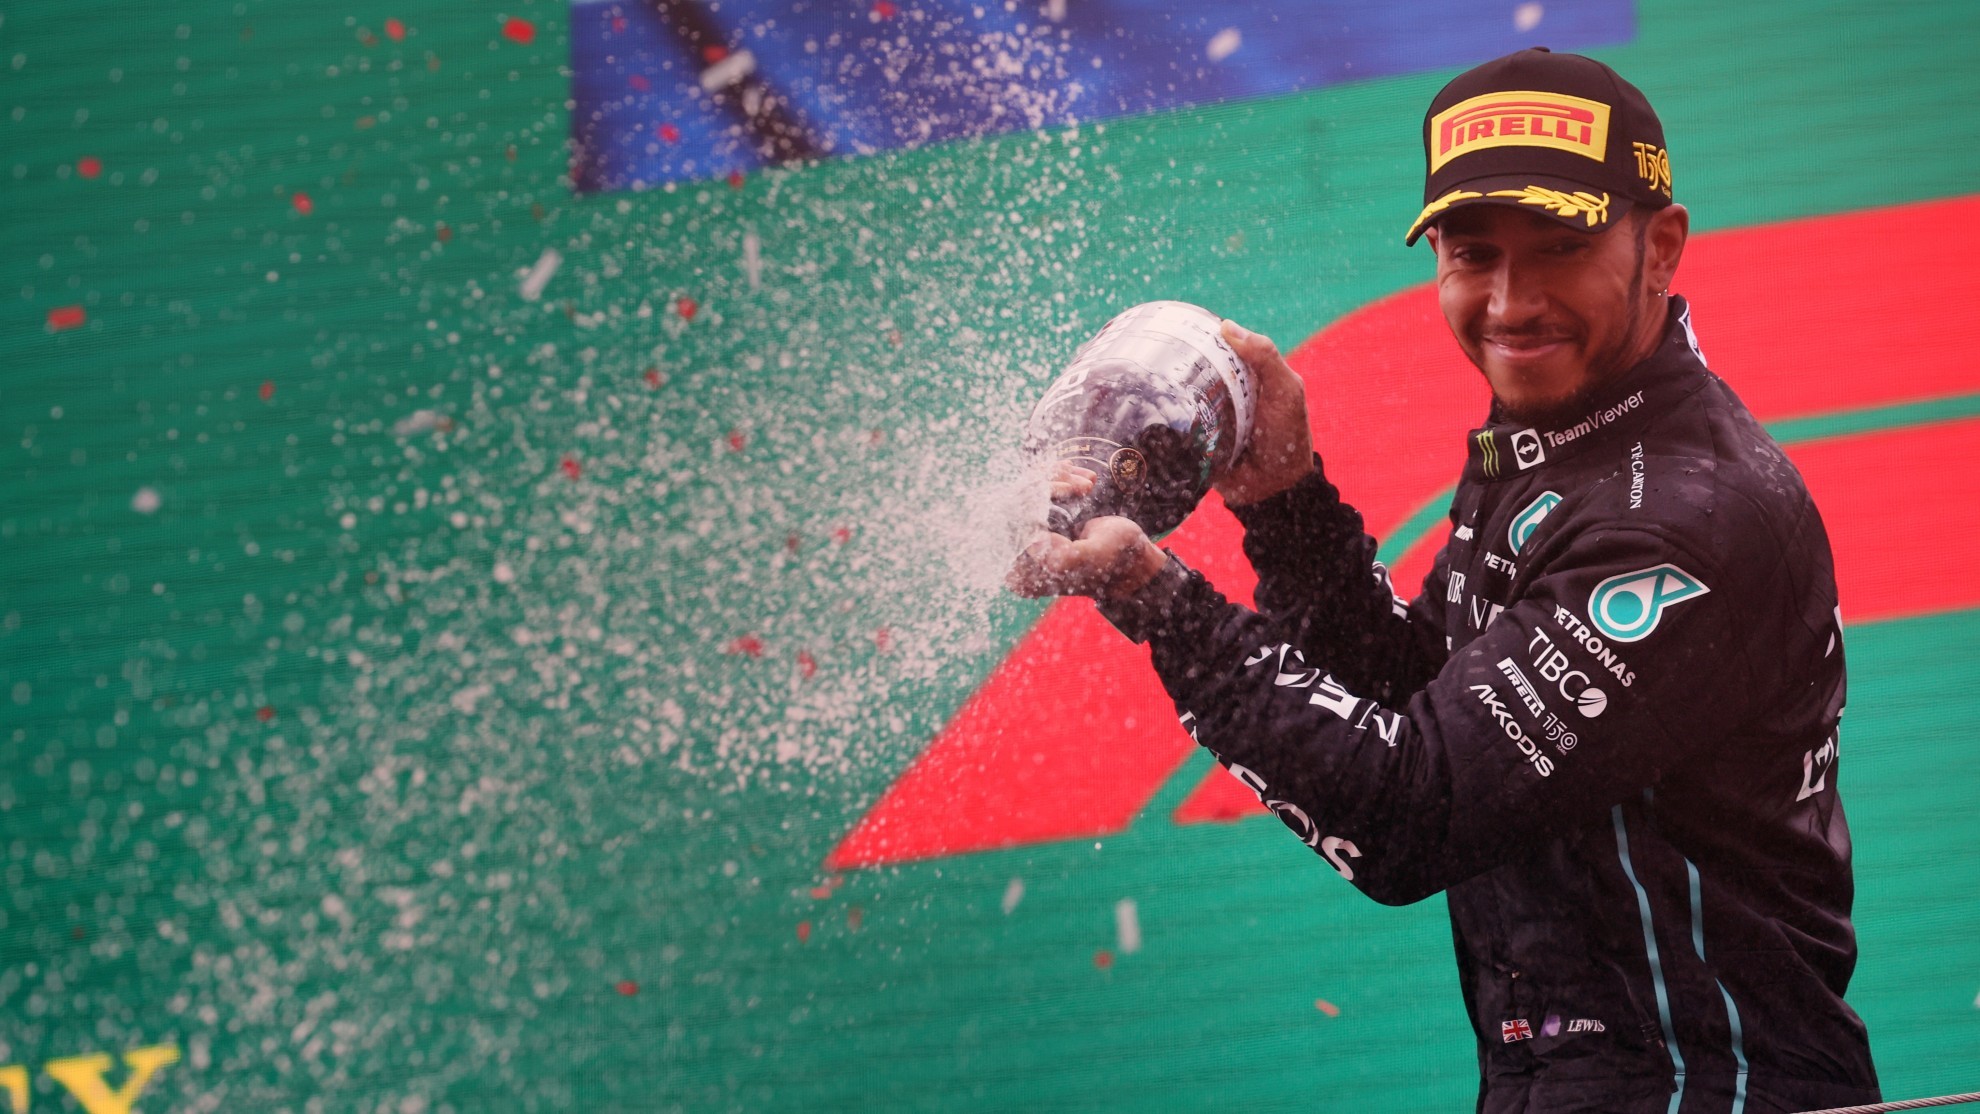 Lewis Hamilton - club de los 300 - 300 grandes premios - Gran Premio de Francia - Formula 1 - Mercedes - Paul Ricard